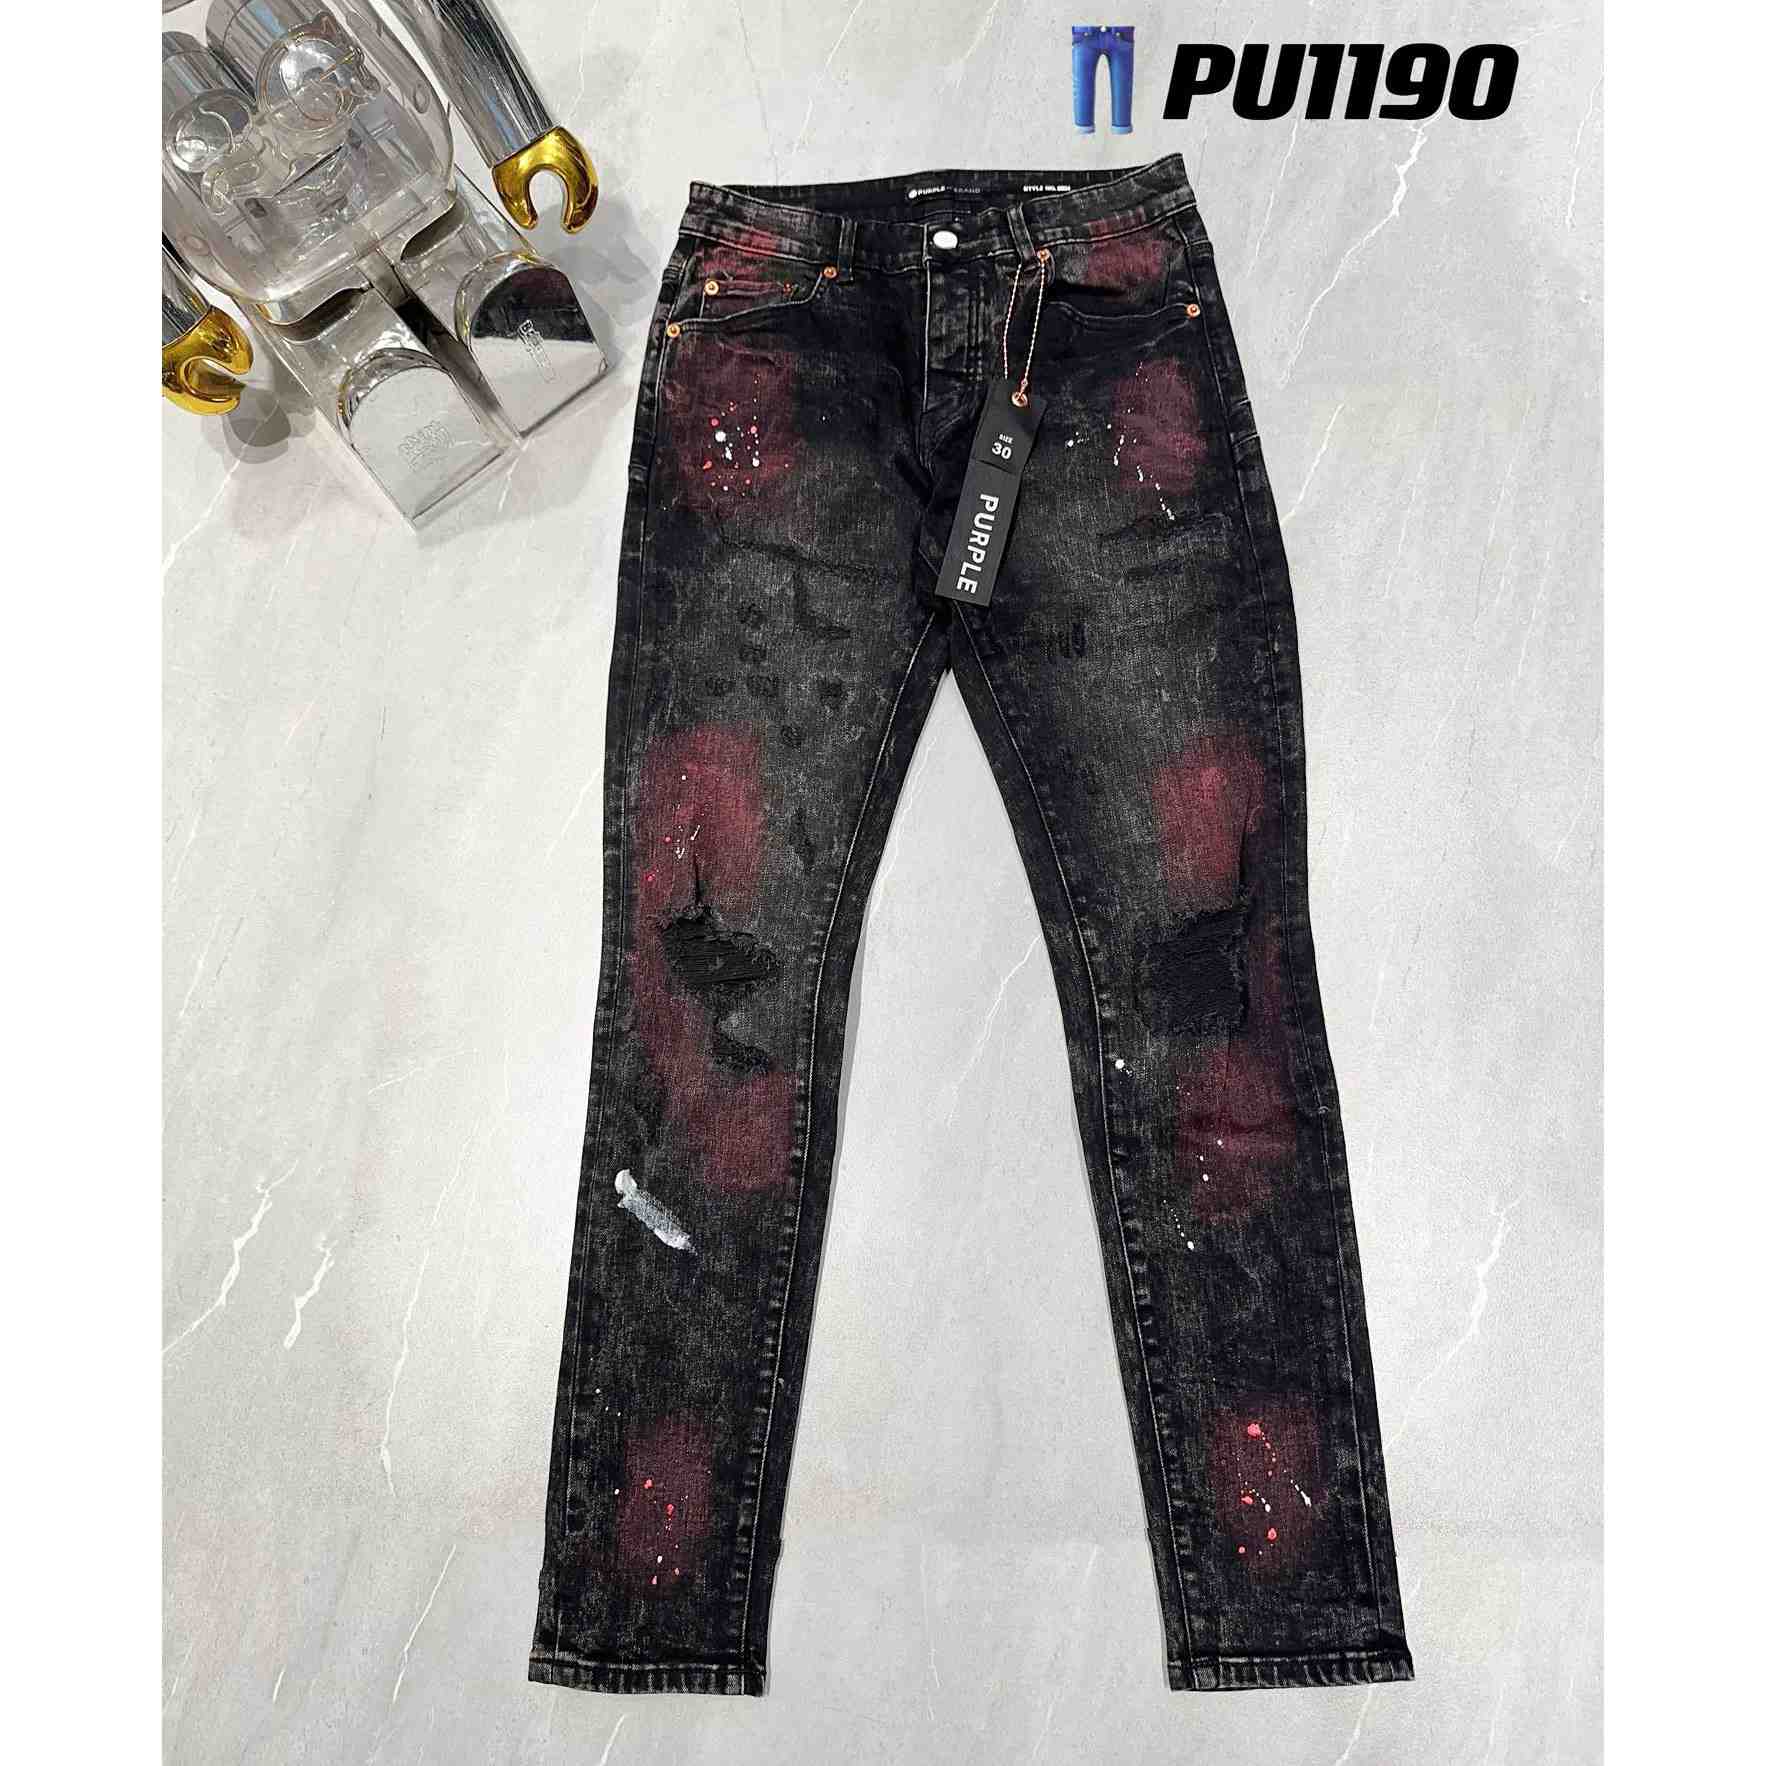 Purple-Brand Jeans   PU1190 - DesignerGu